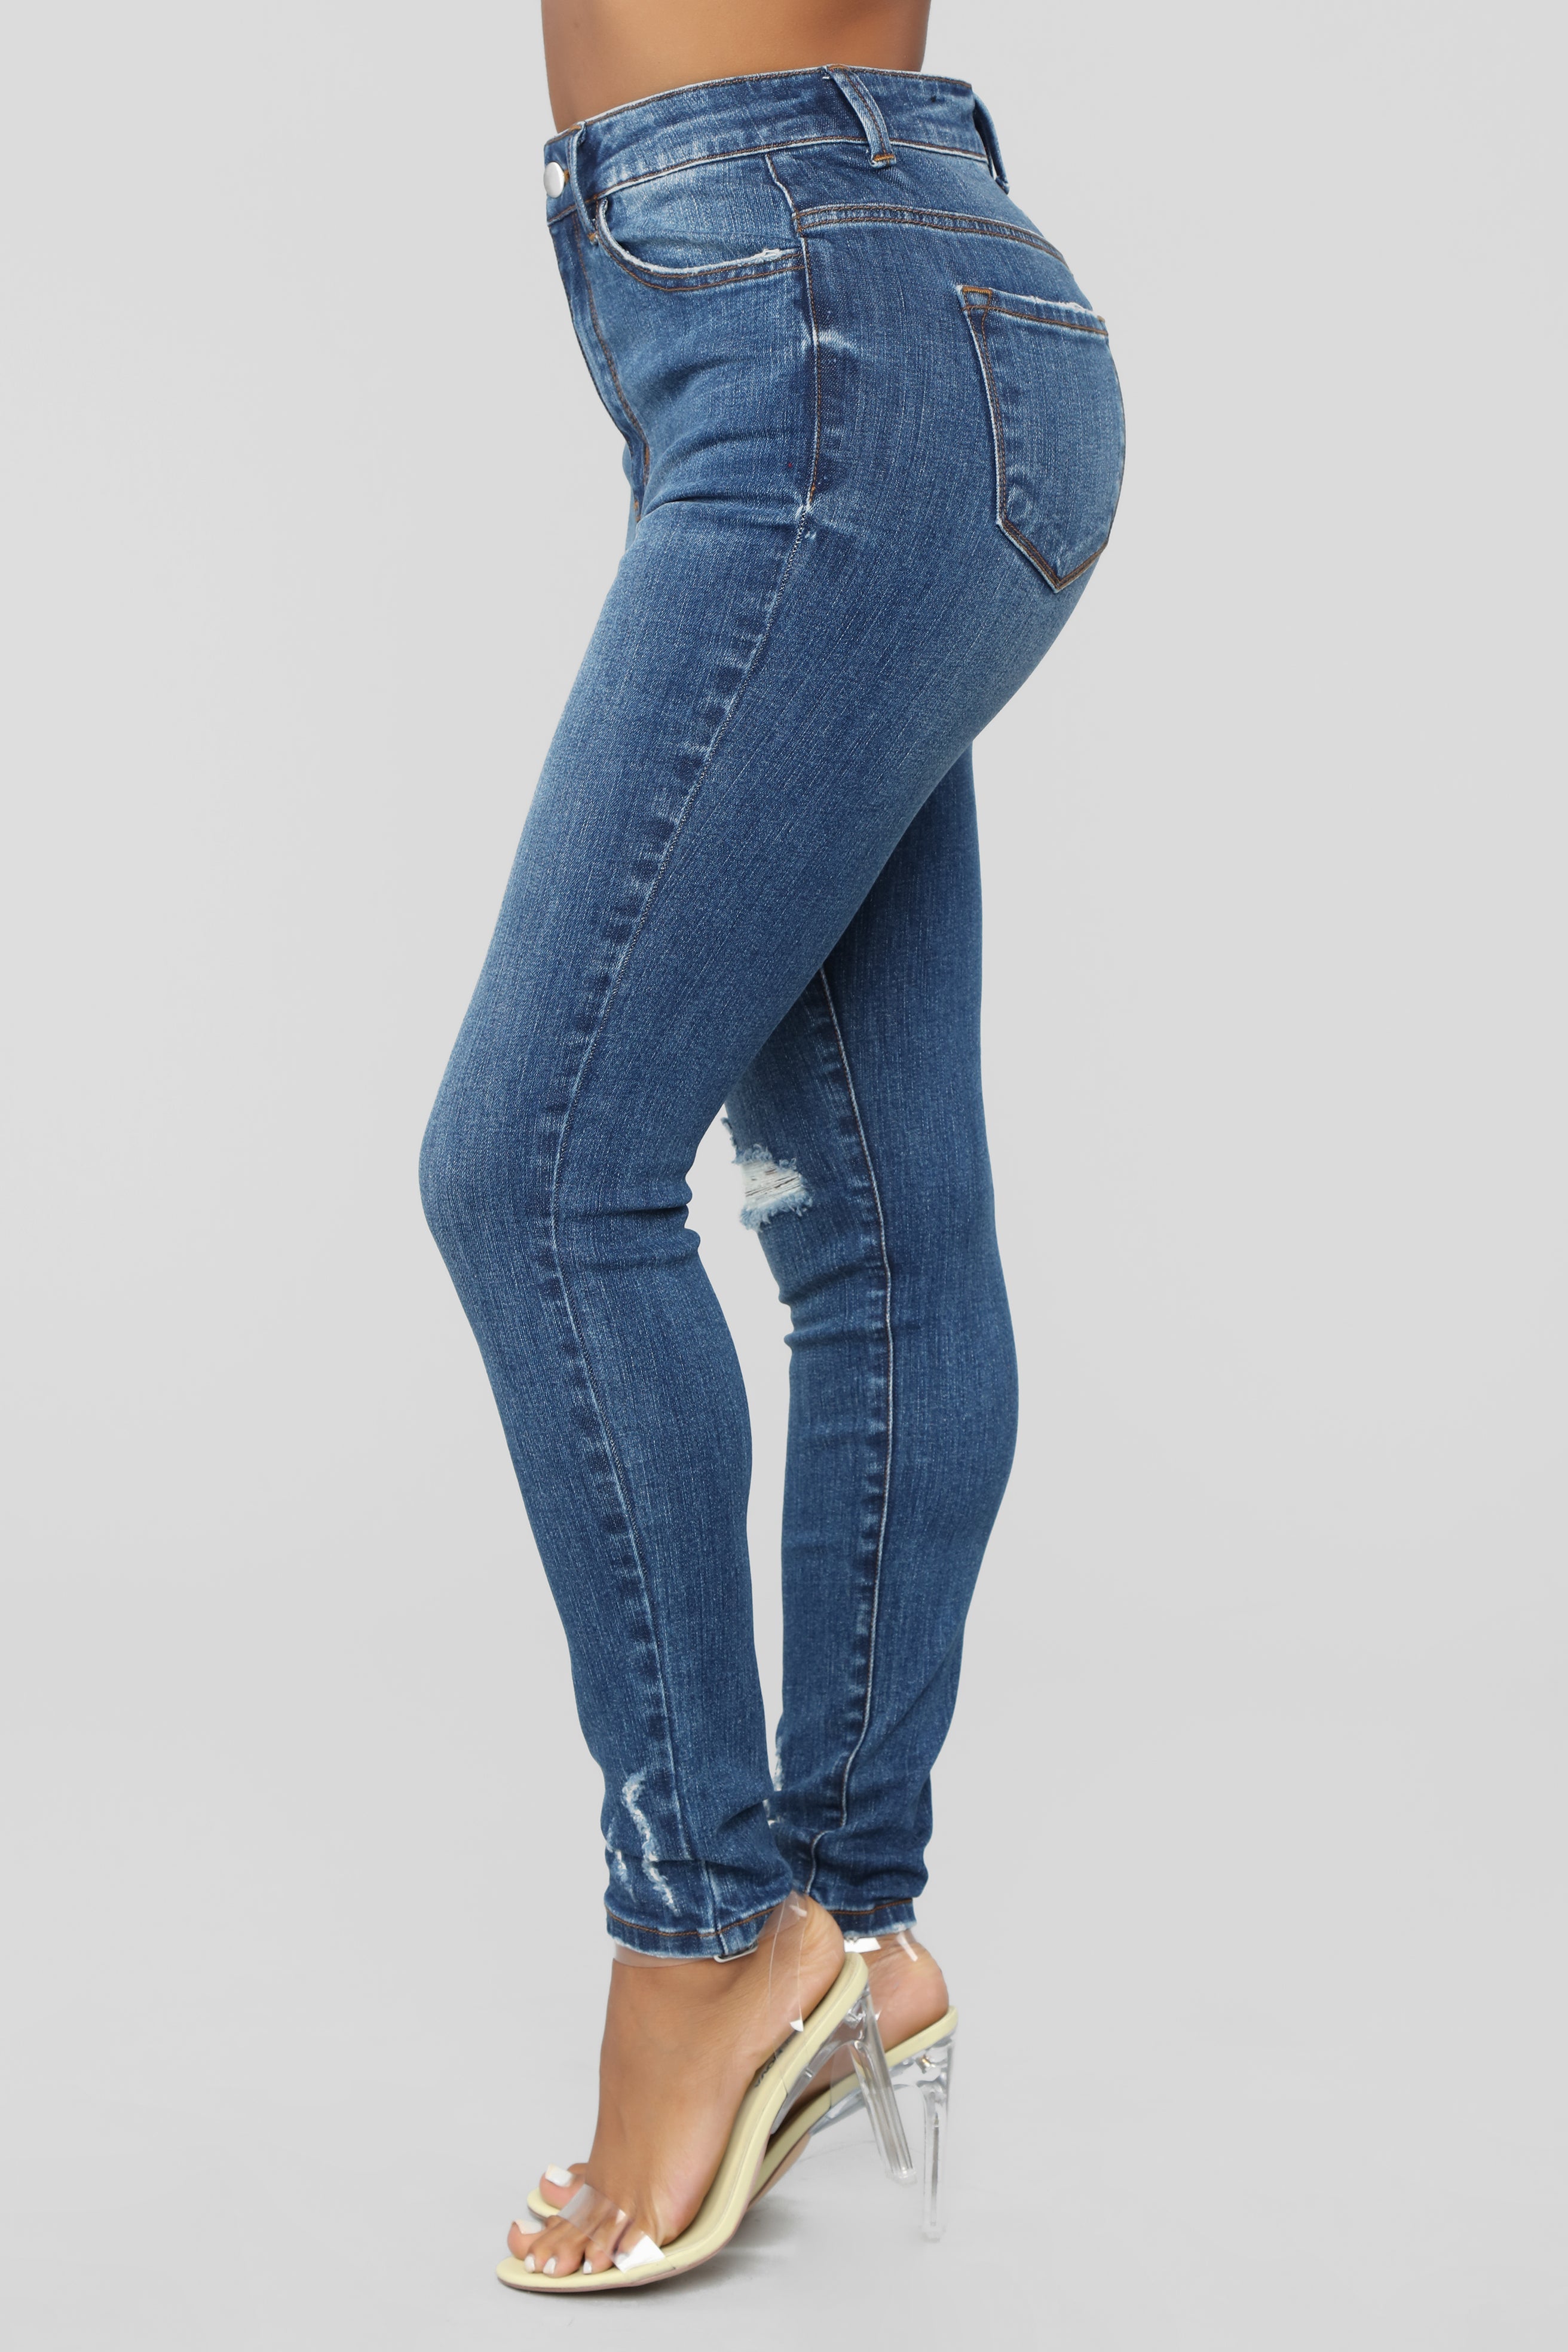 Dream Girl High Rise Skinny Jeans - Medium Blue Wash – InsStreet